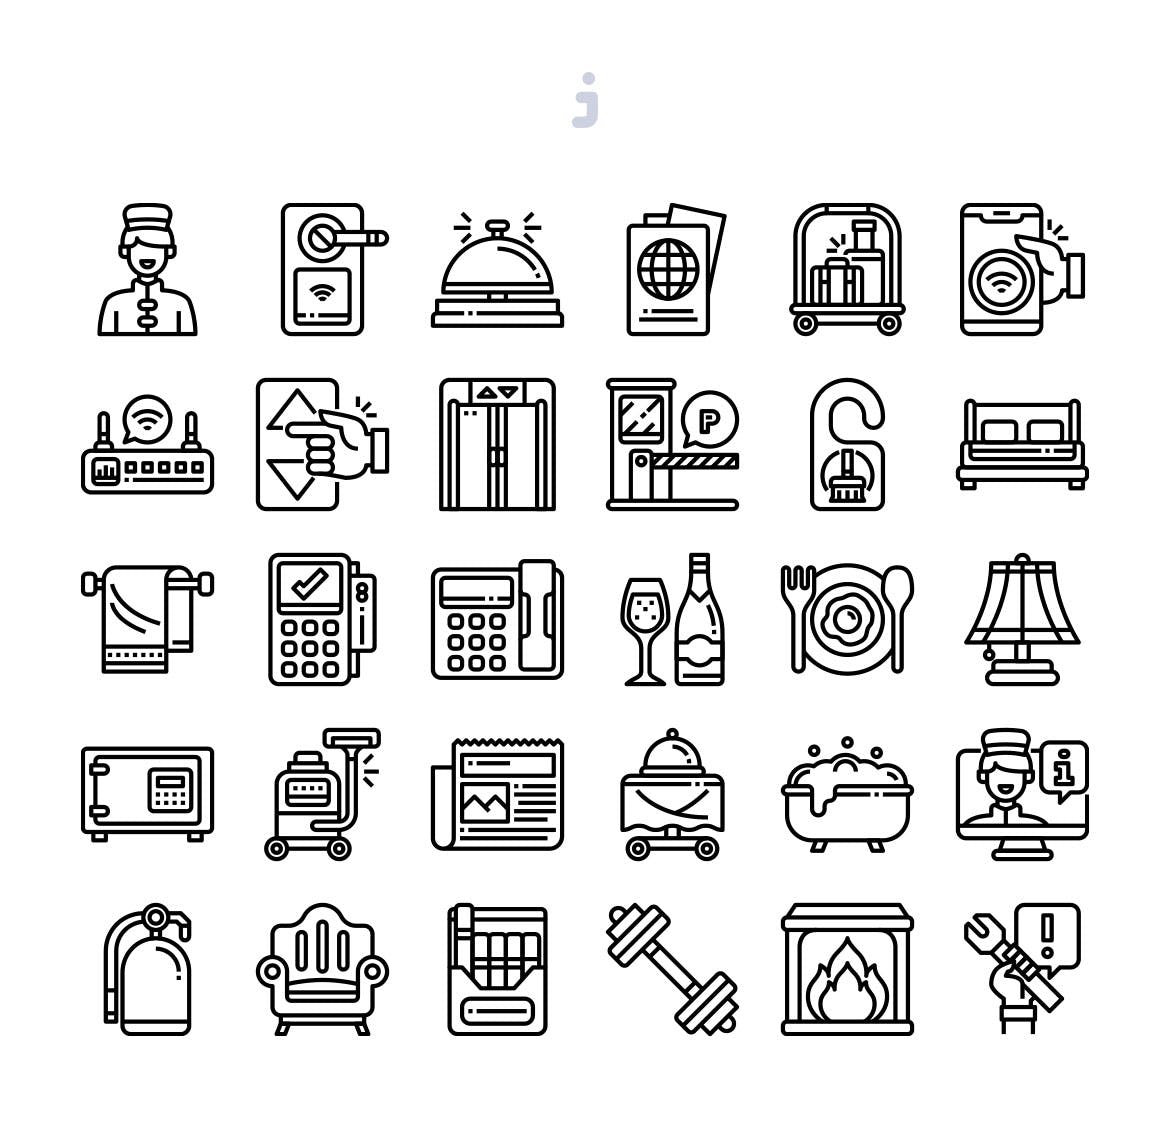 30枚医院医疗主题矢量蚂蚁素材精选图标 30 Hotel Essentials Icons插图(2)